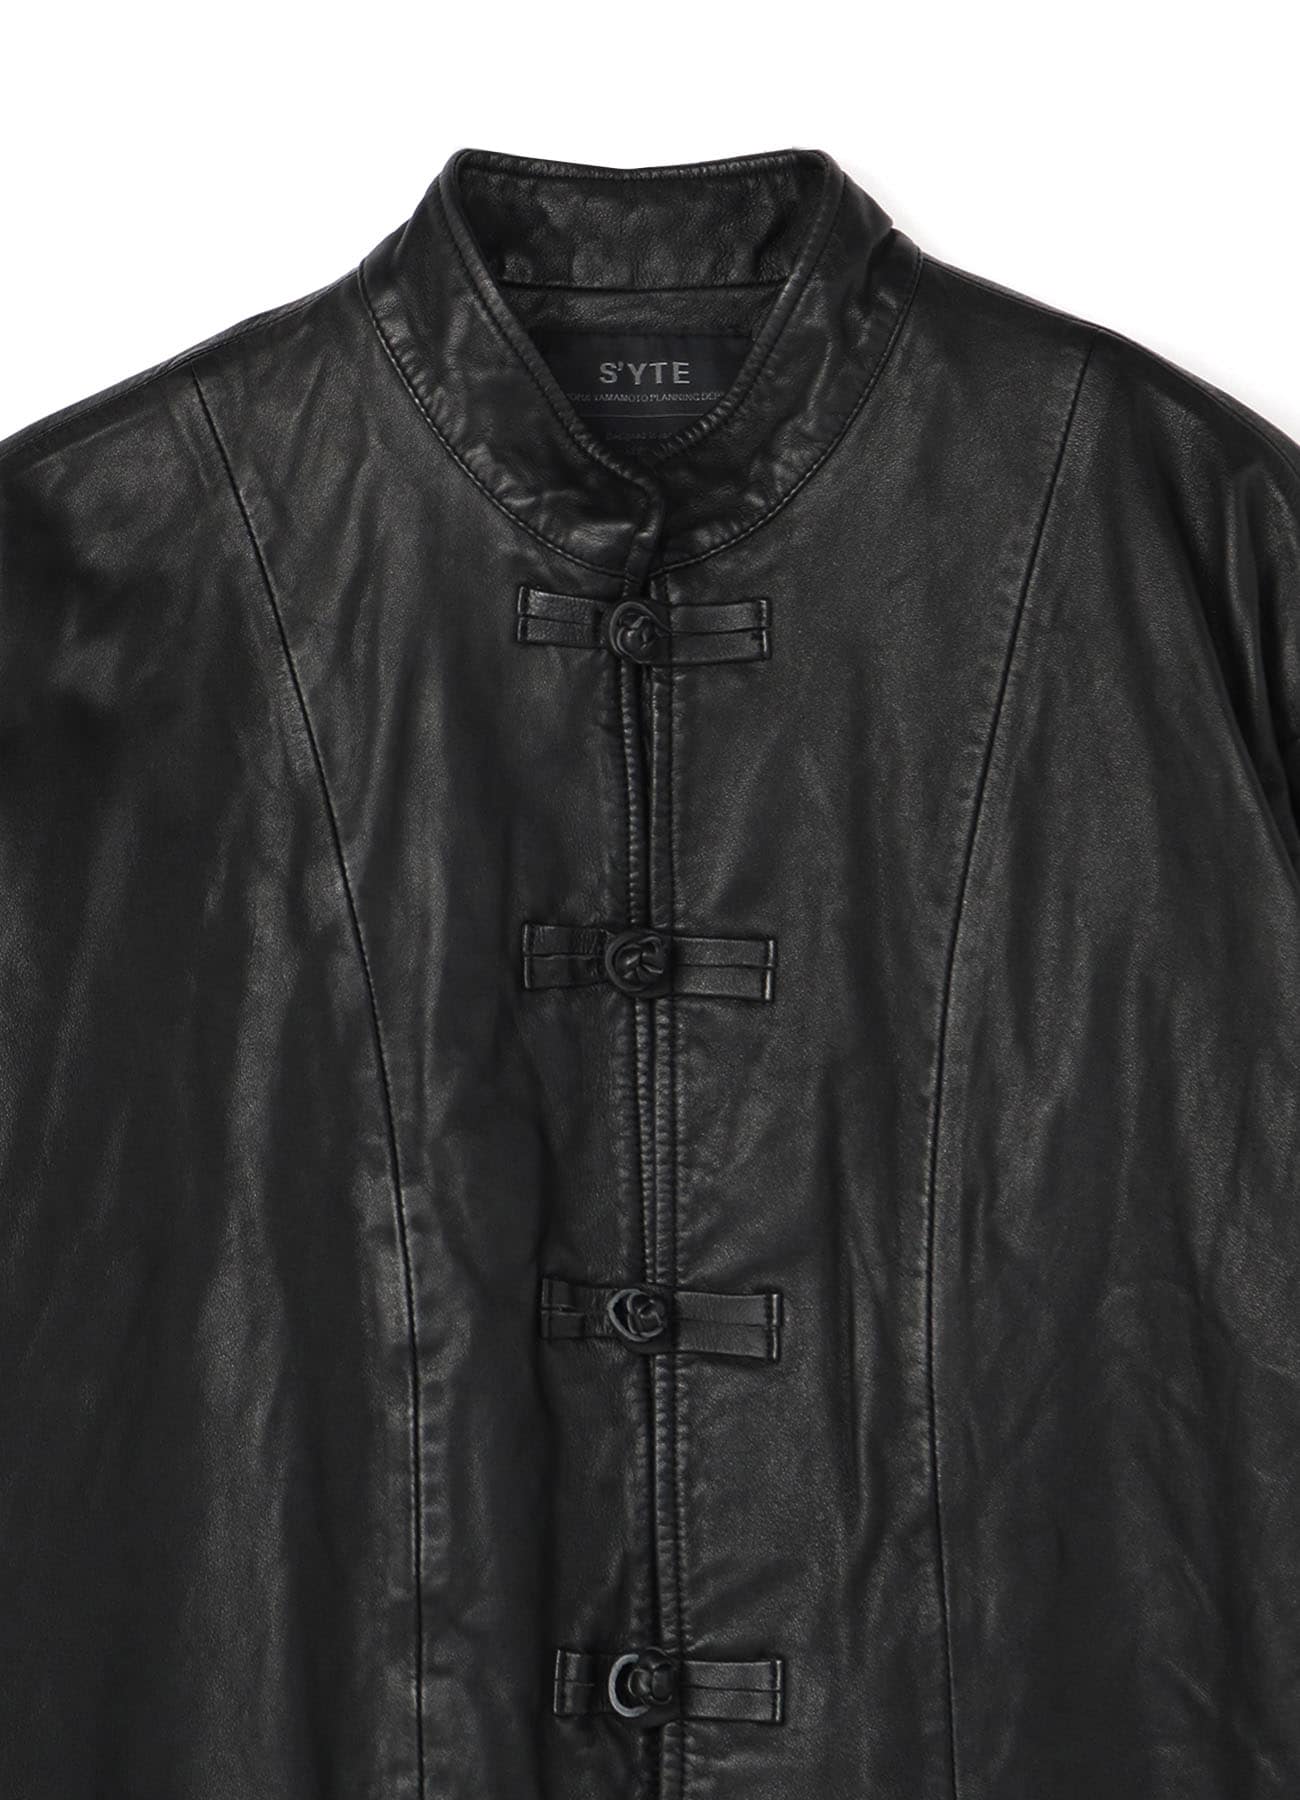 Sheepskin Leather Washed China Jacket